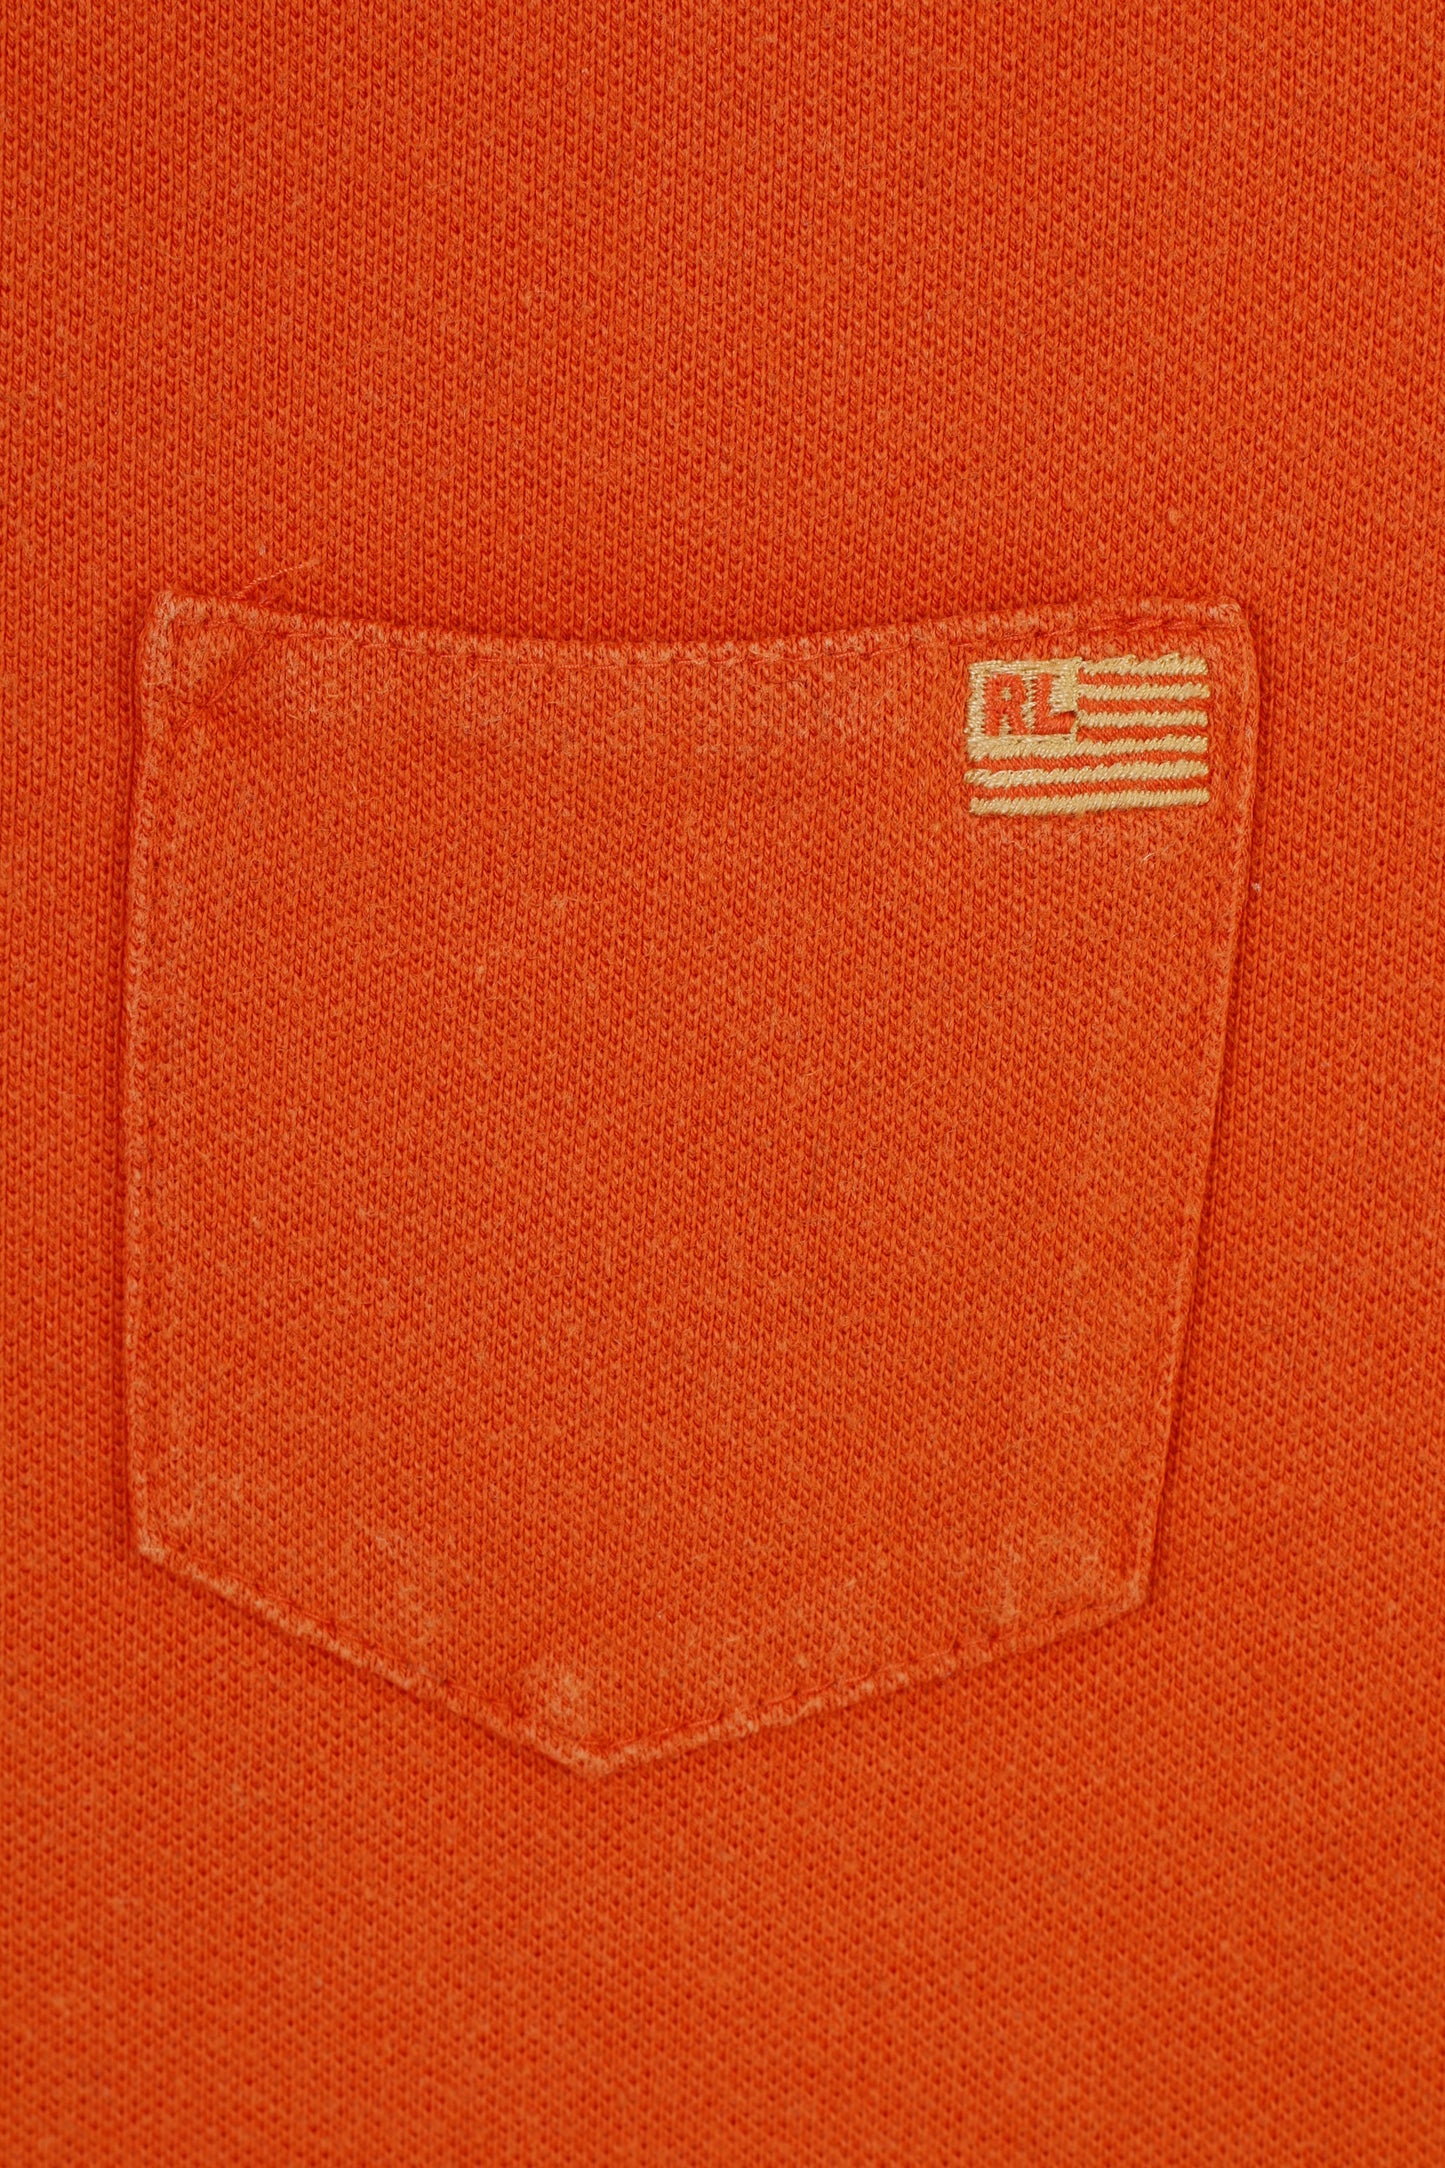 Polo Jeans Company Polo da donna L Polo in cotone arancione a maniche corte con colletto